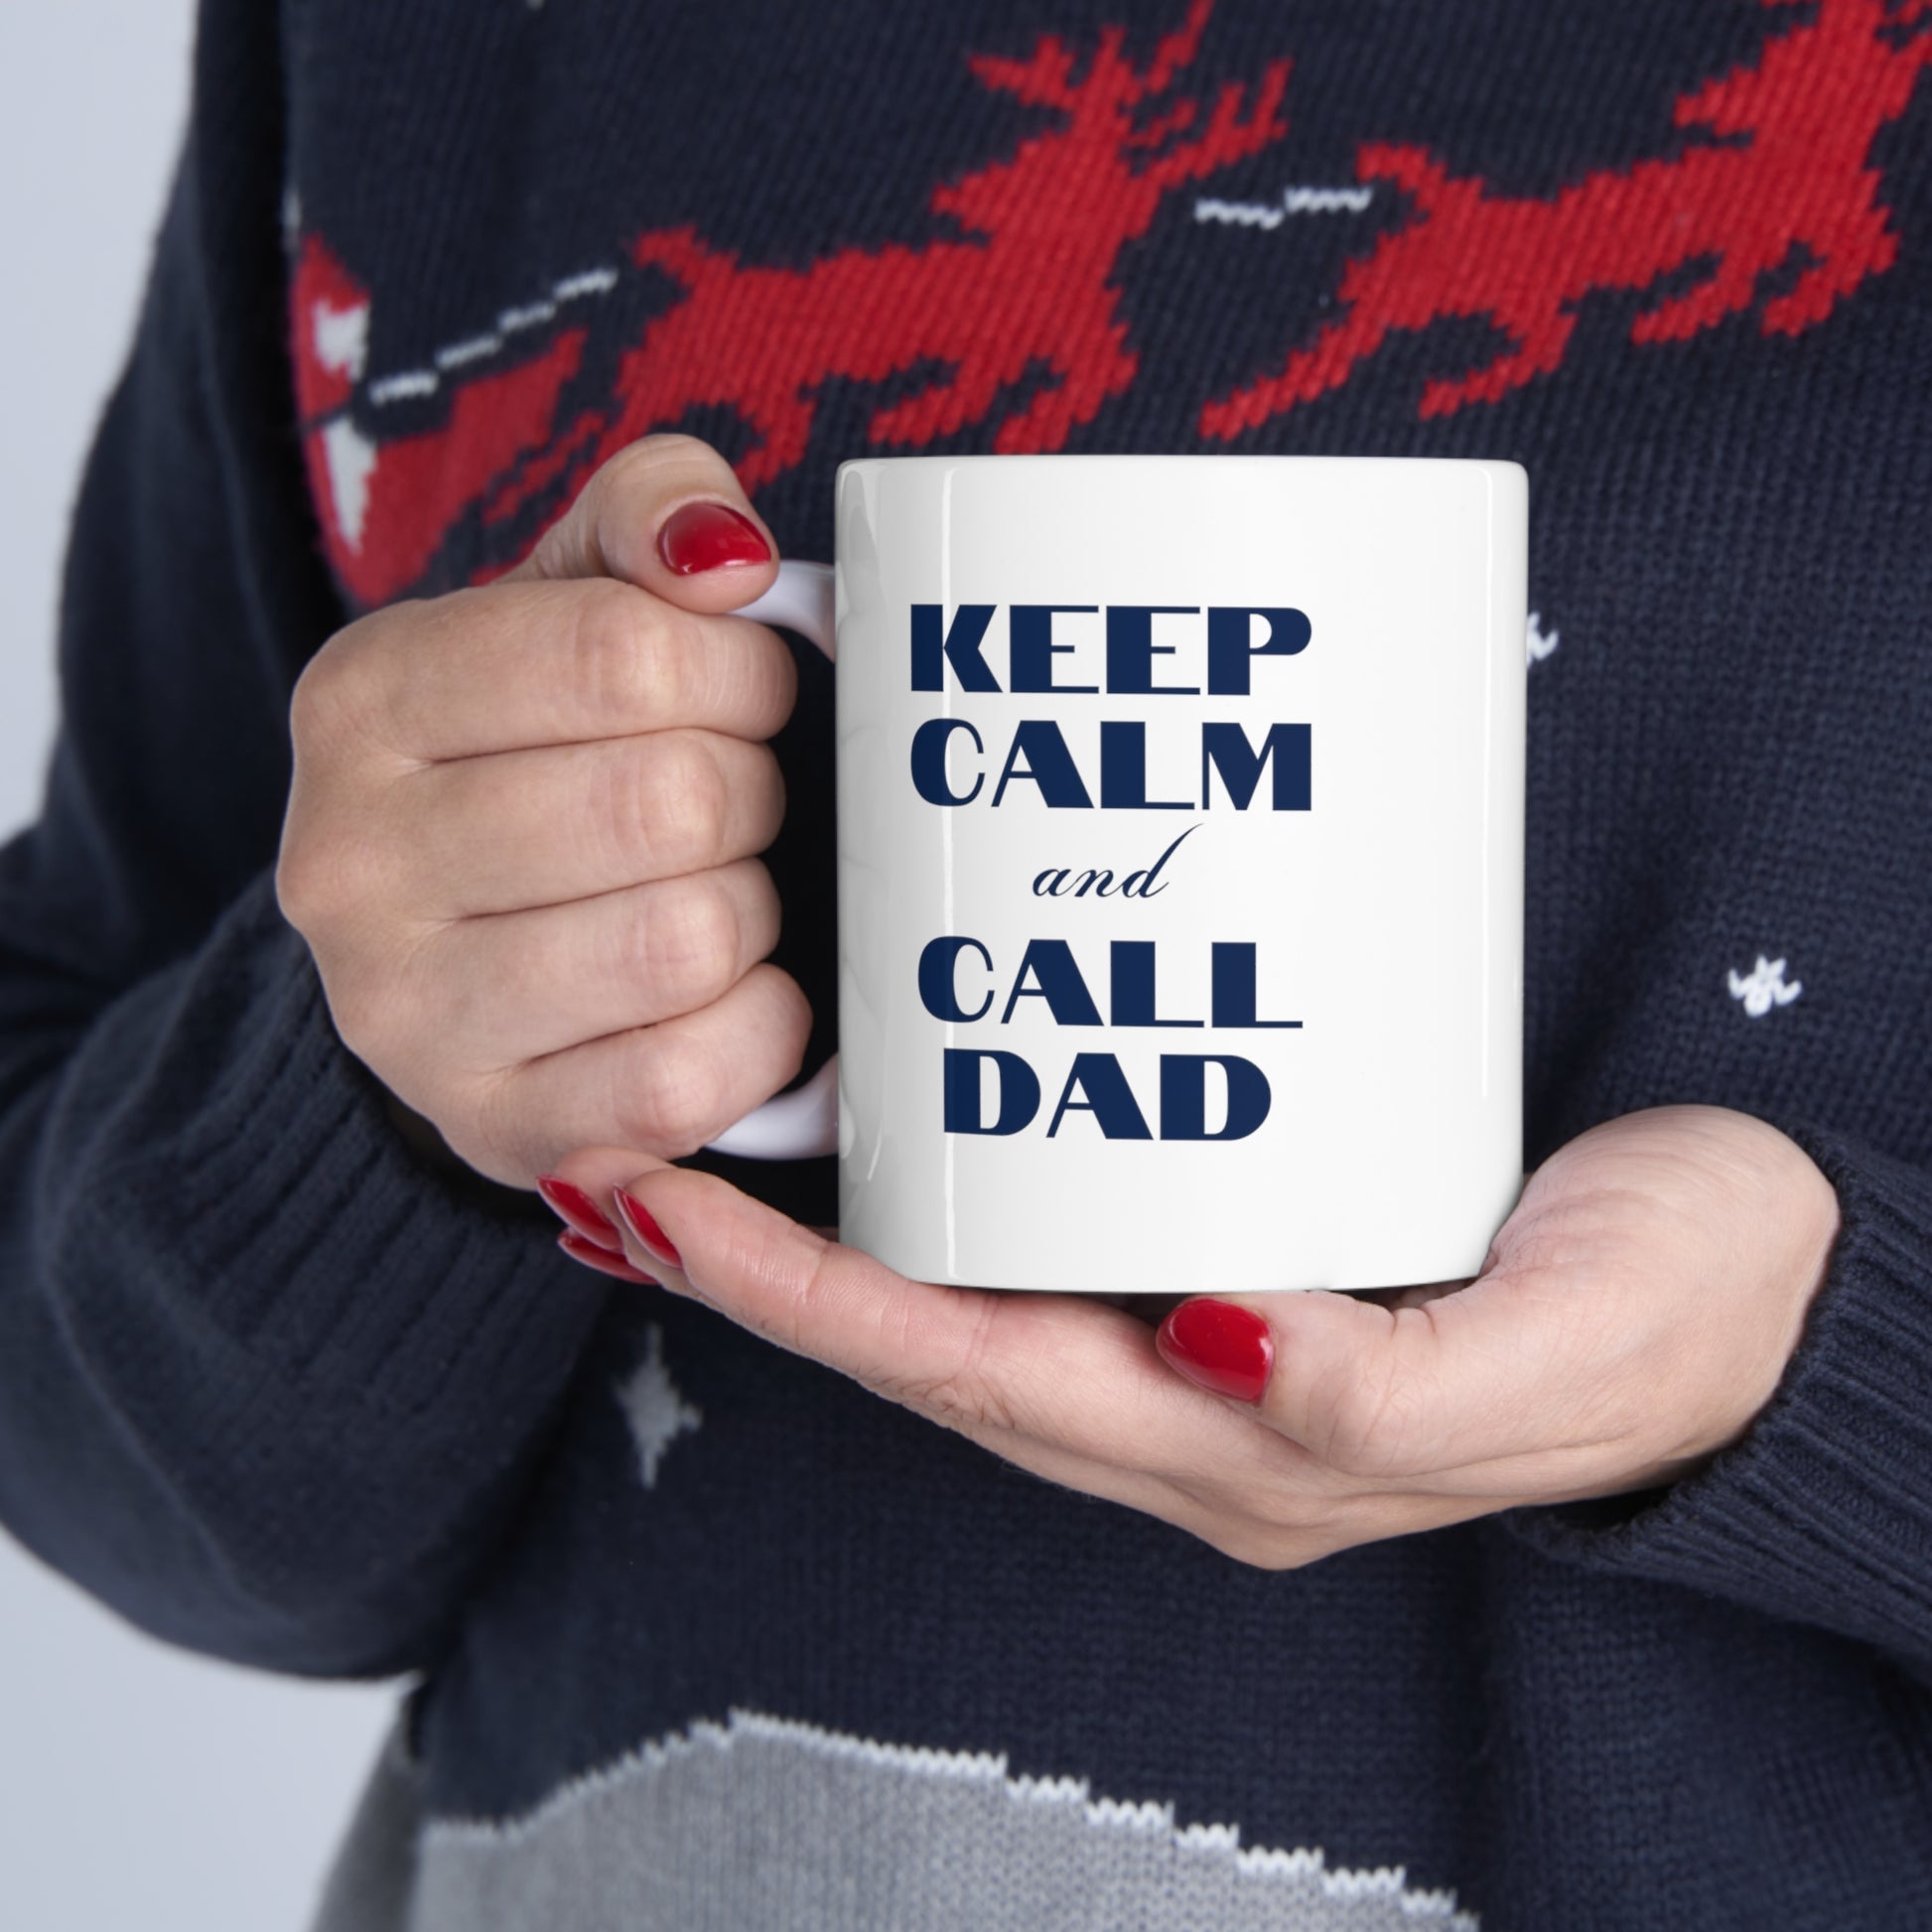 Keep Calm and Call Dad Ceramic Funny Mug 11oz